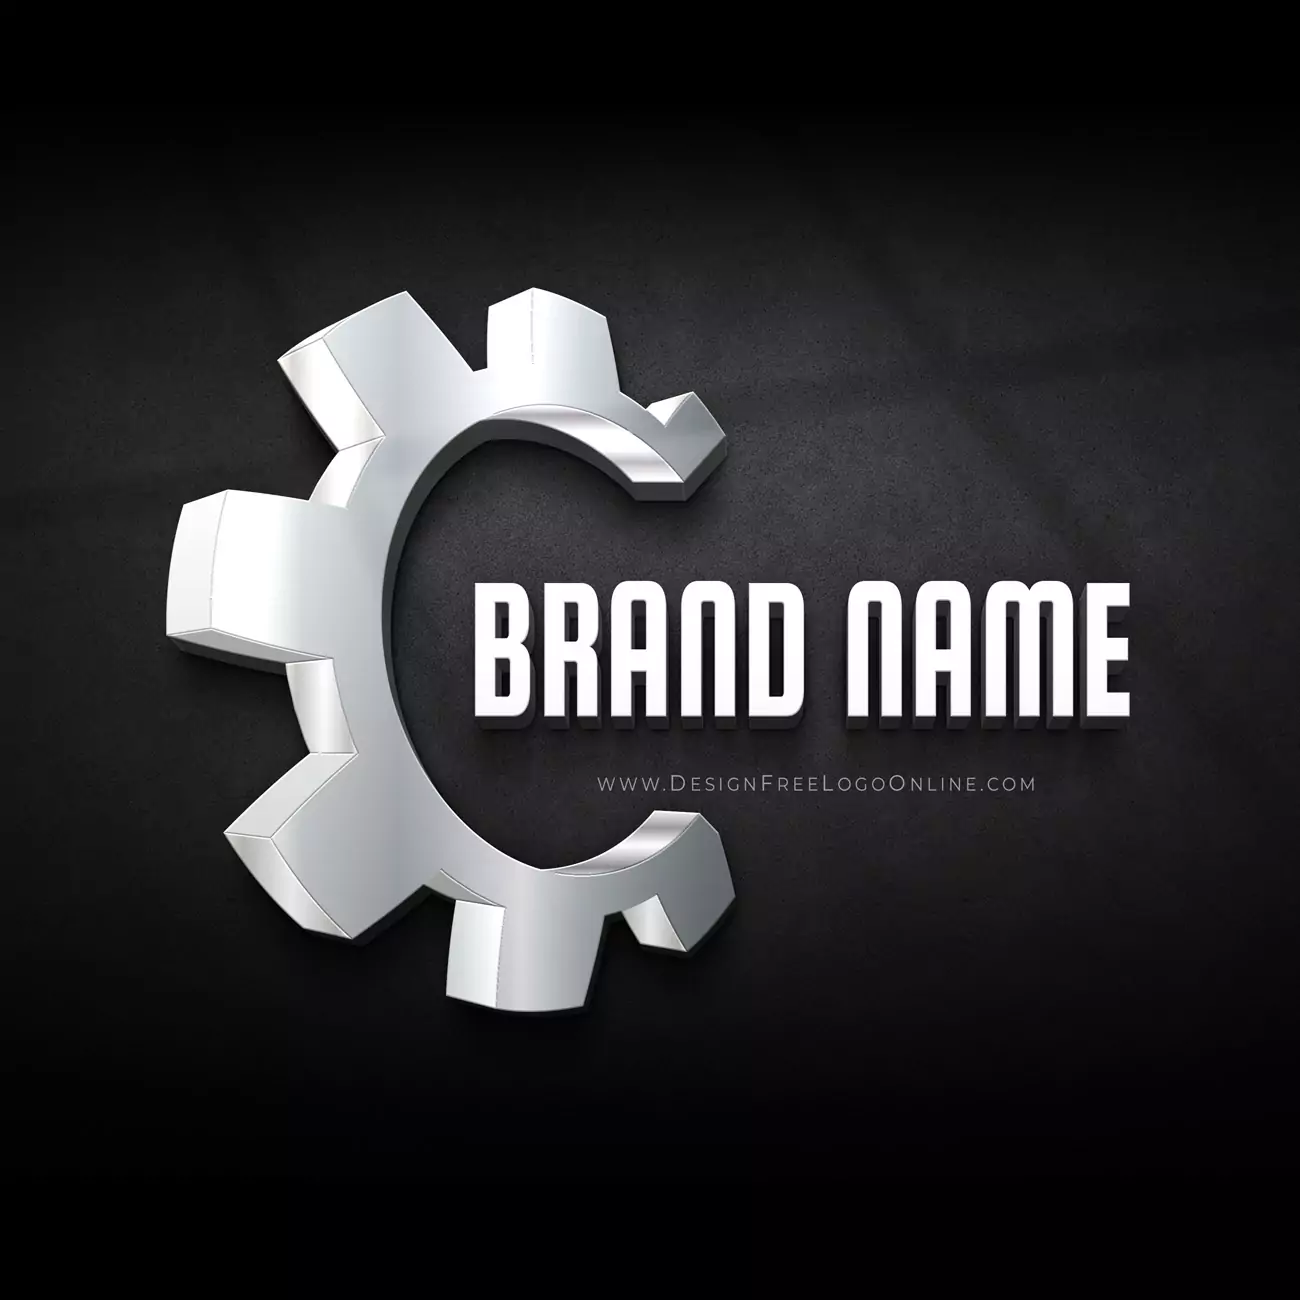 Créateur de logo industriel